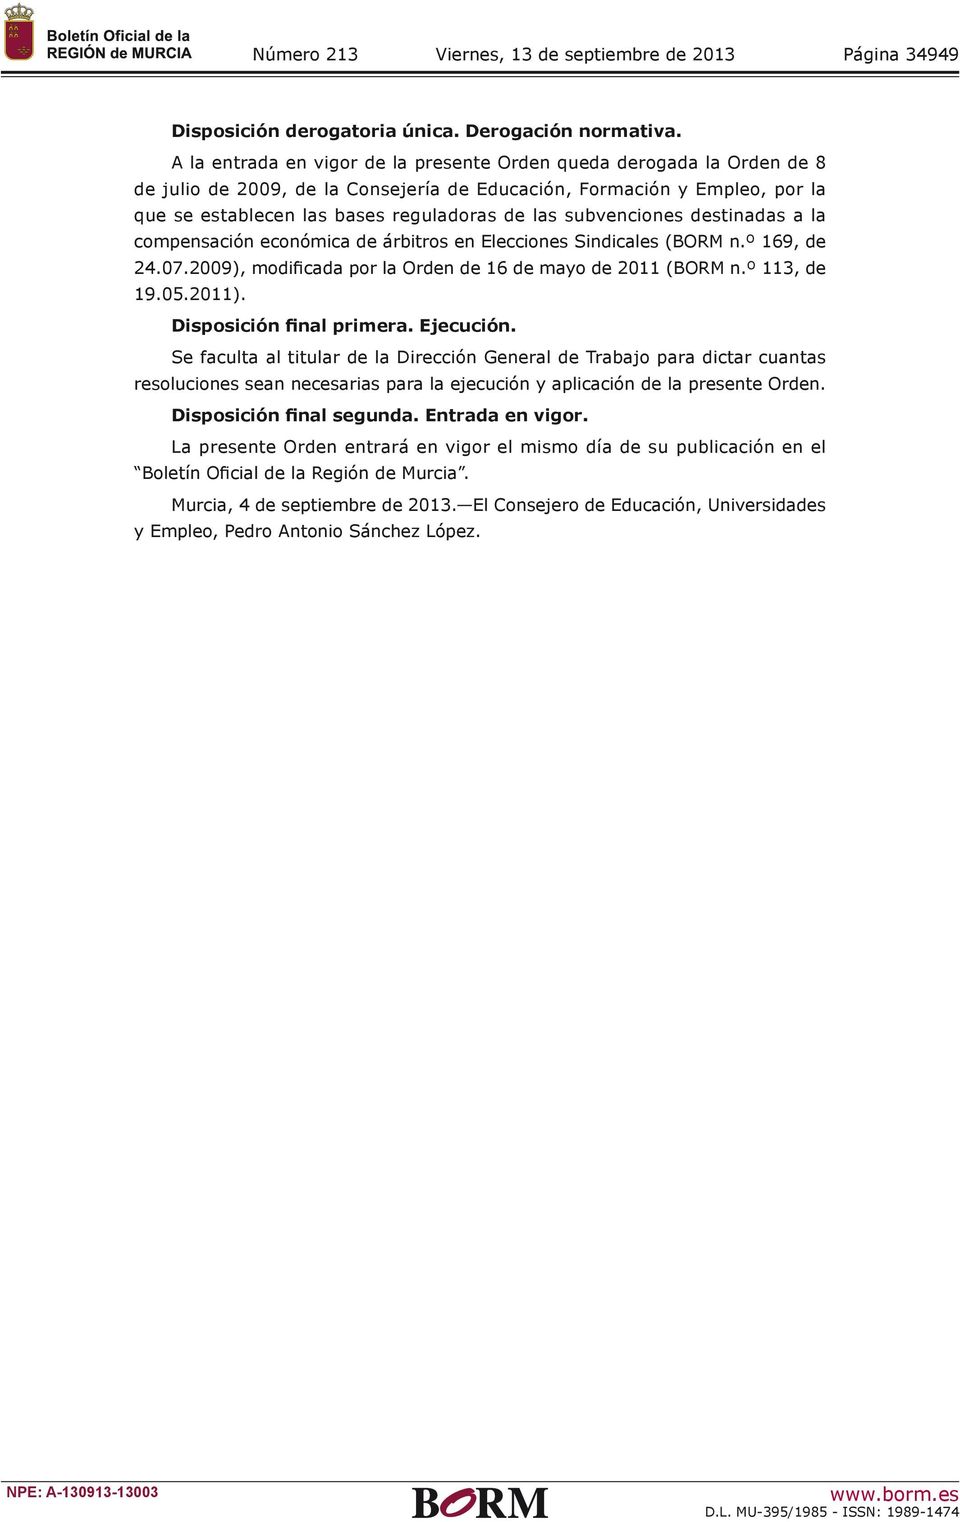 subvenciones destinadas a la compensación económica de árbitros en Elecciones Sindicales (BORM n.º 169, de 24.07.2009), modificada por la Orden de 16 de mayo de 2011 (BORM n.º 113, de 19.05.2011).